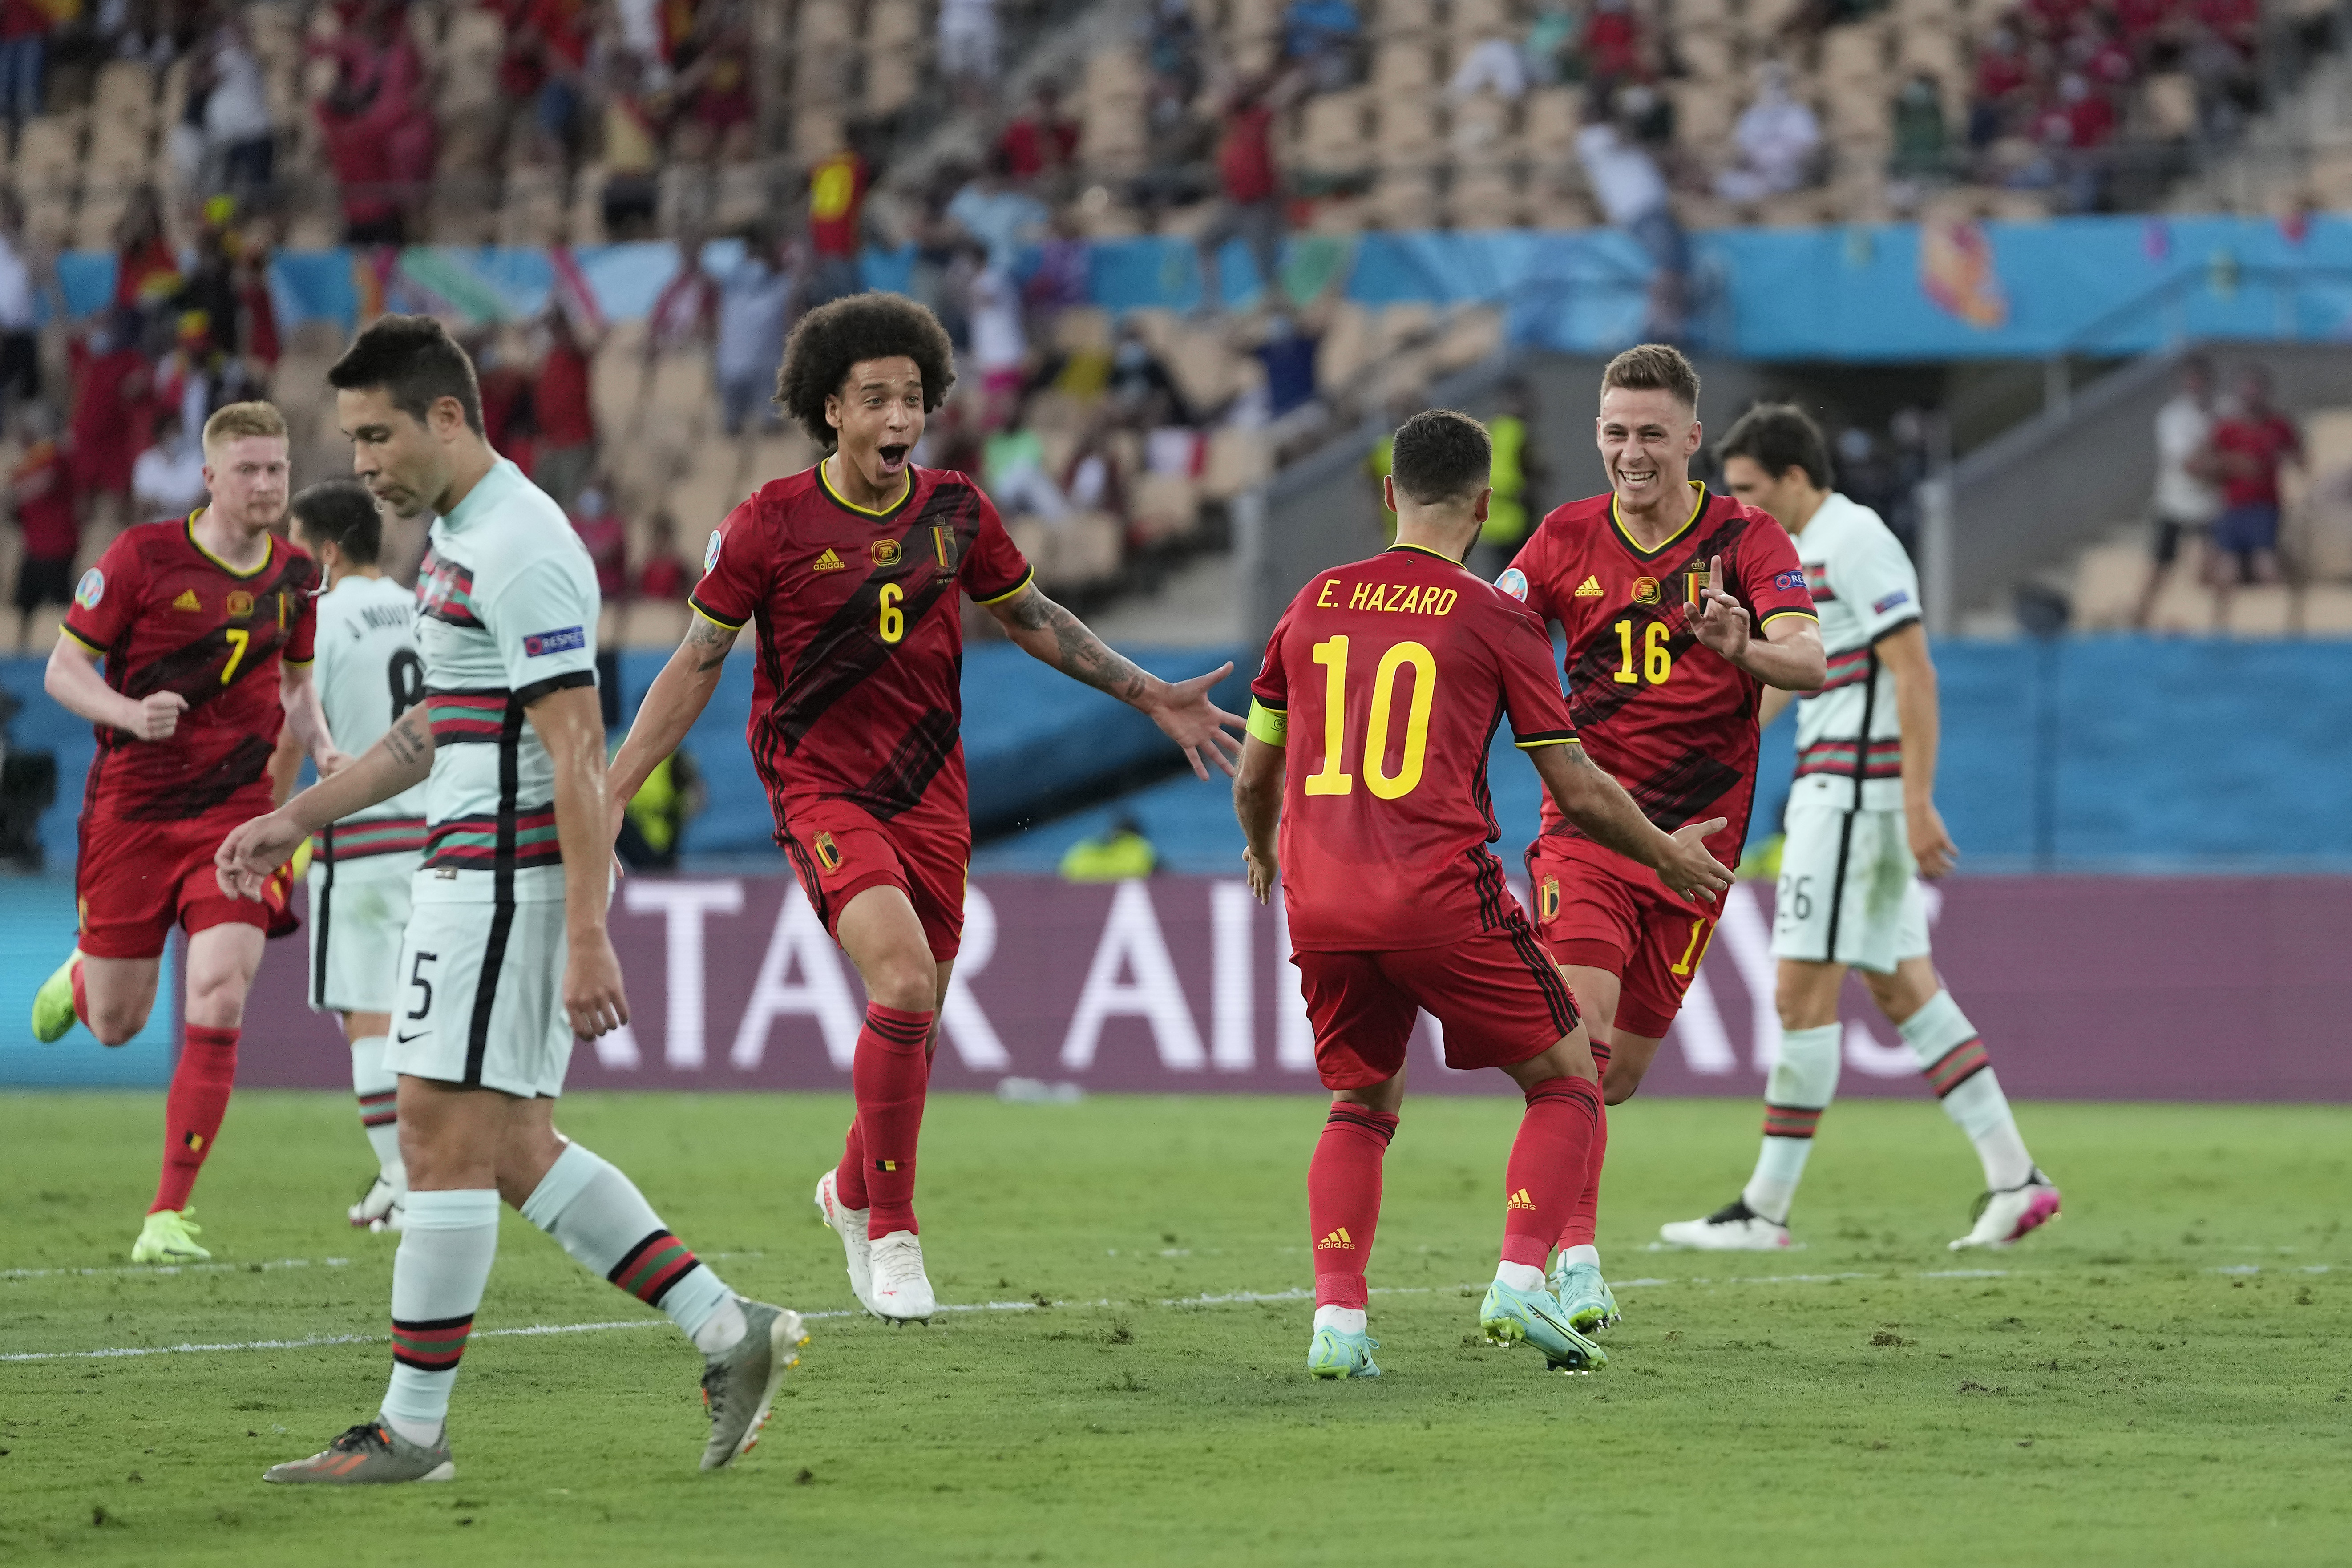 Bélgica derruba o atual campeão Portugal nas oitavas da Eurocopa